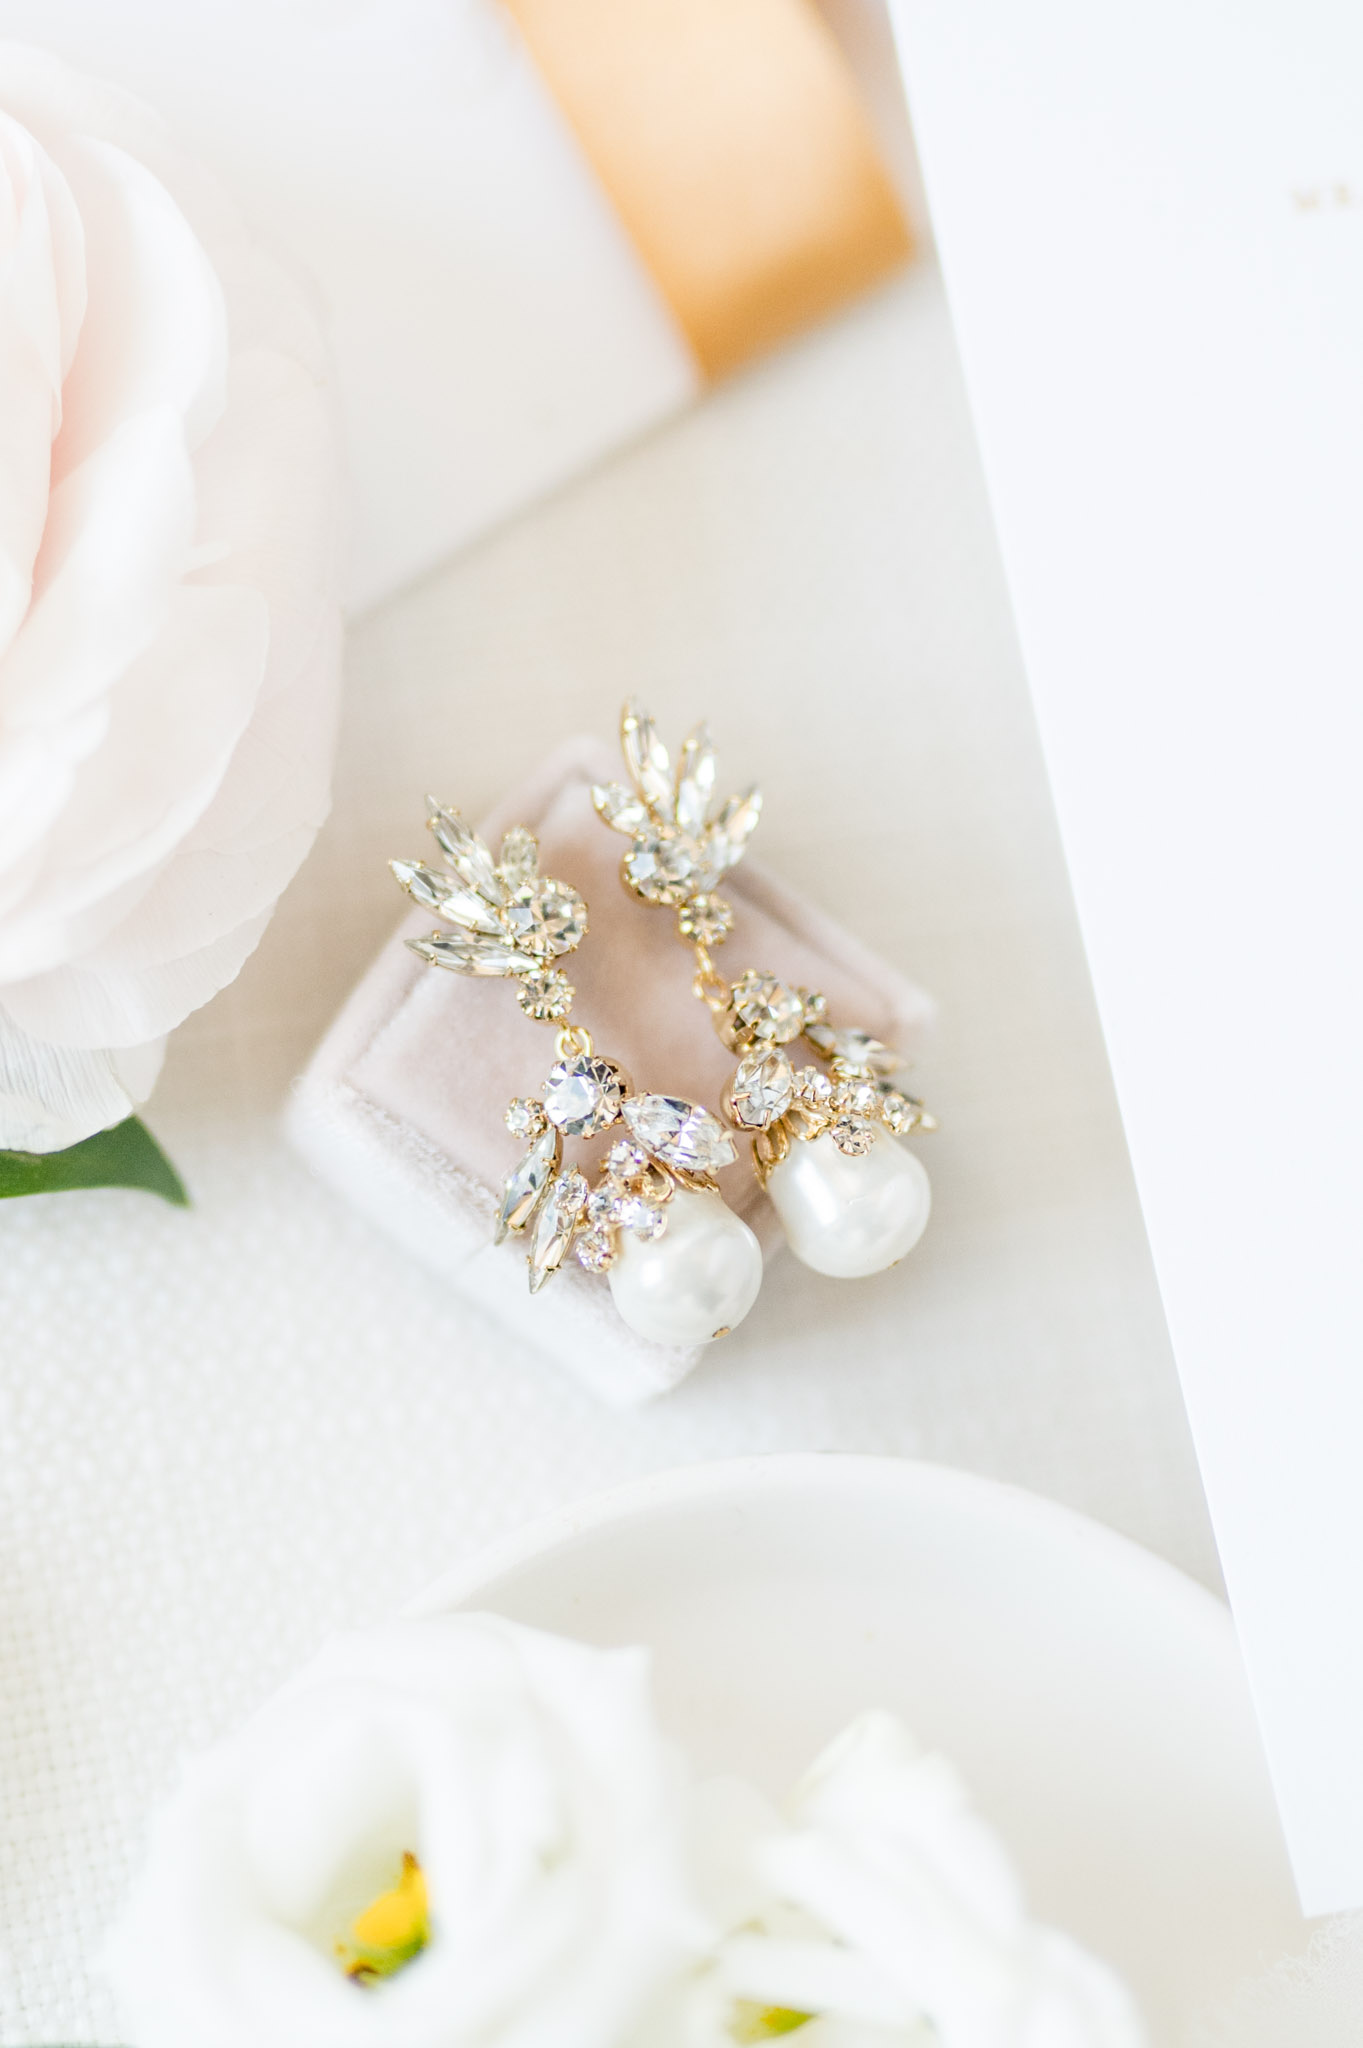 Bride's earrings sit on velvet box.